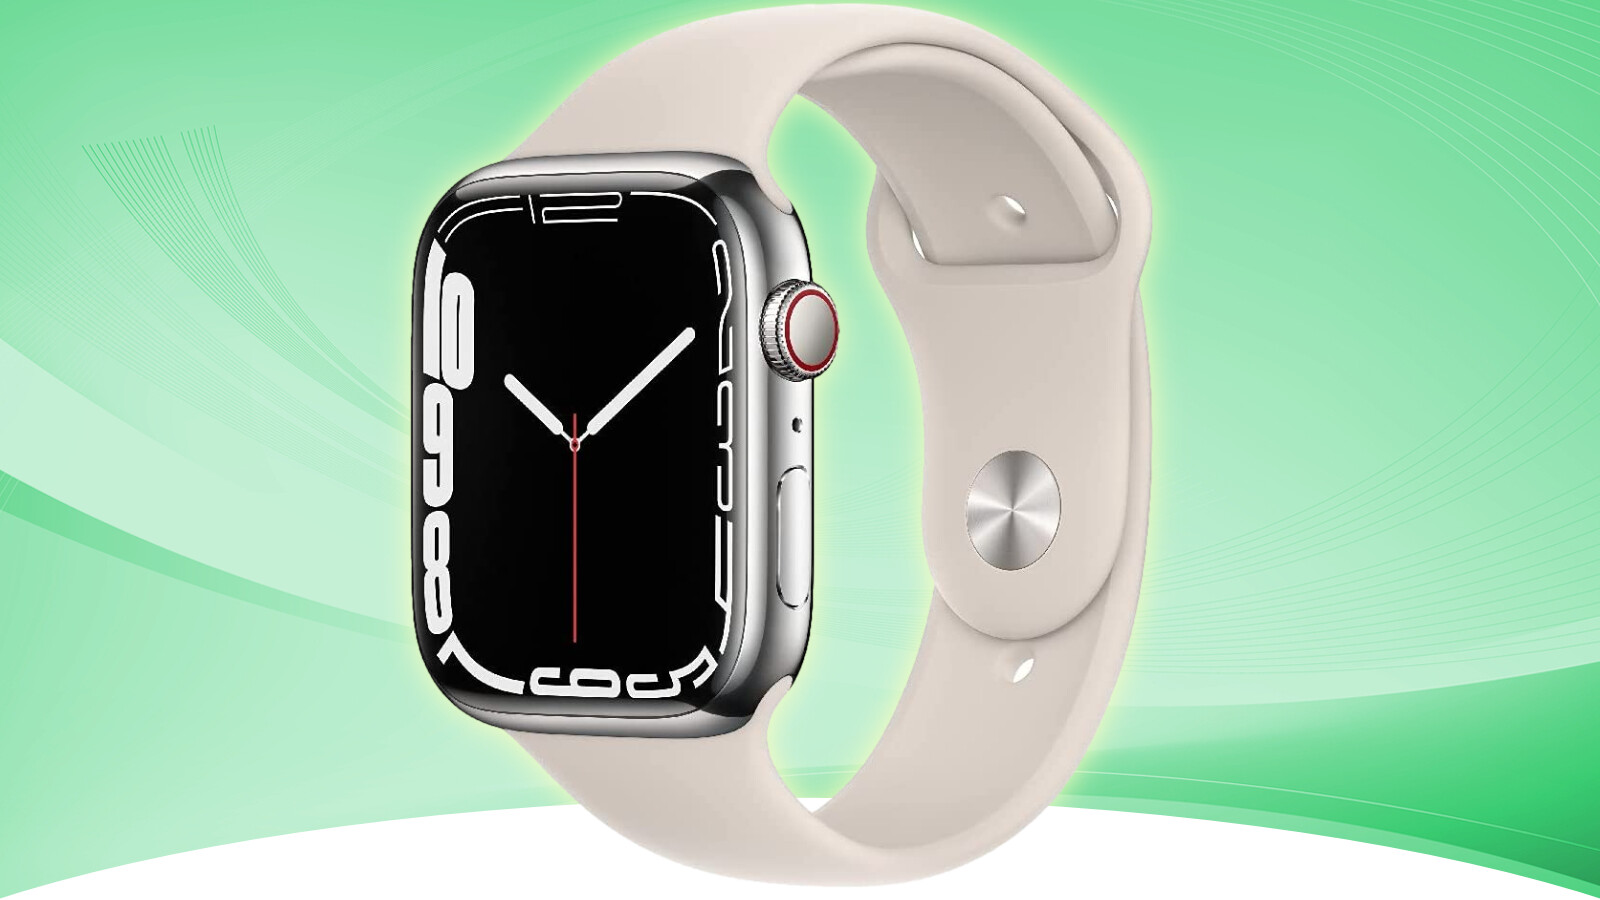 Apple Watch Series 7 teraz w ofercie w Czarny piątek: teraz możesz kupić zegarek jeszcze taniej na Amazon